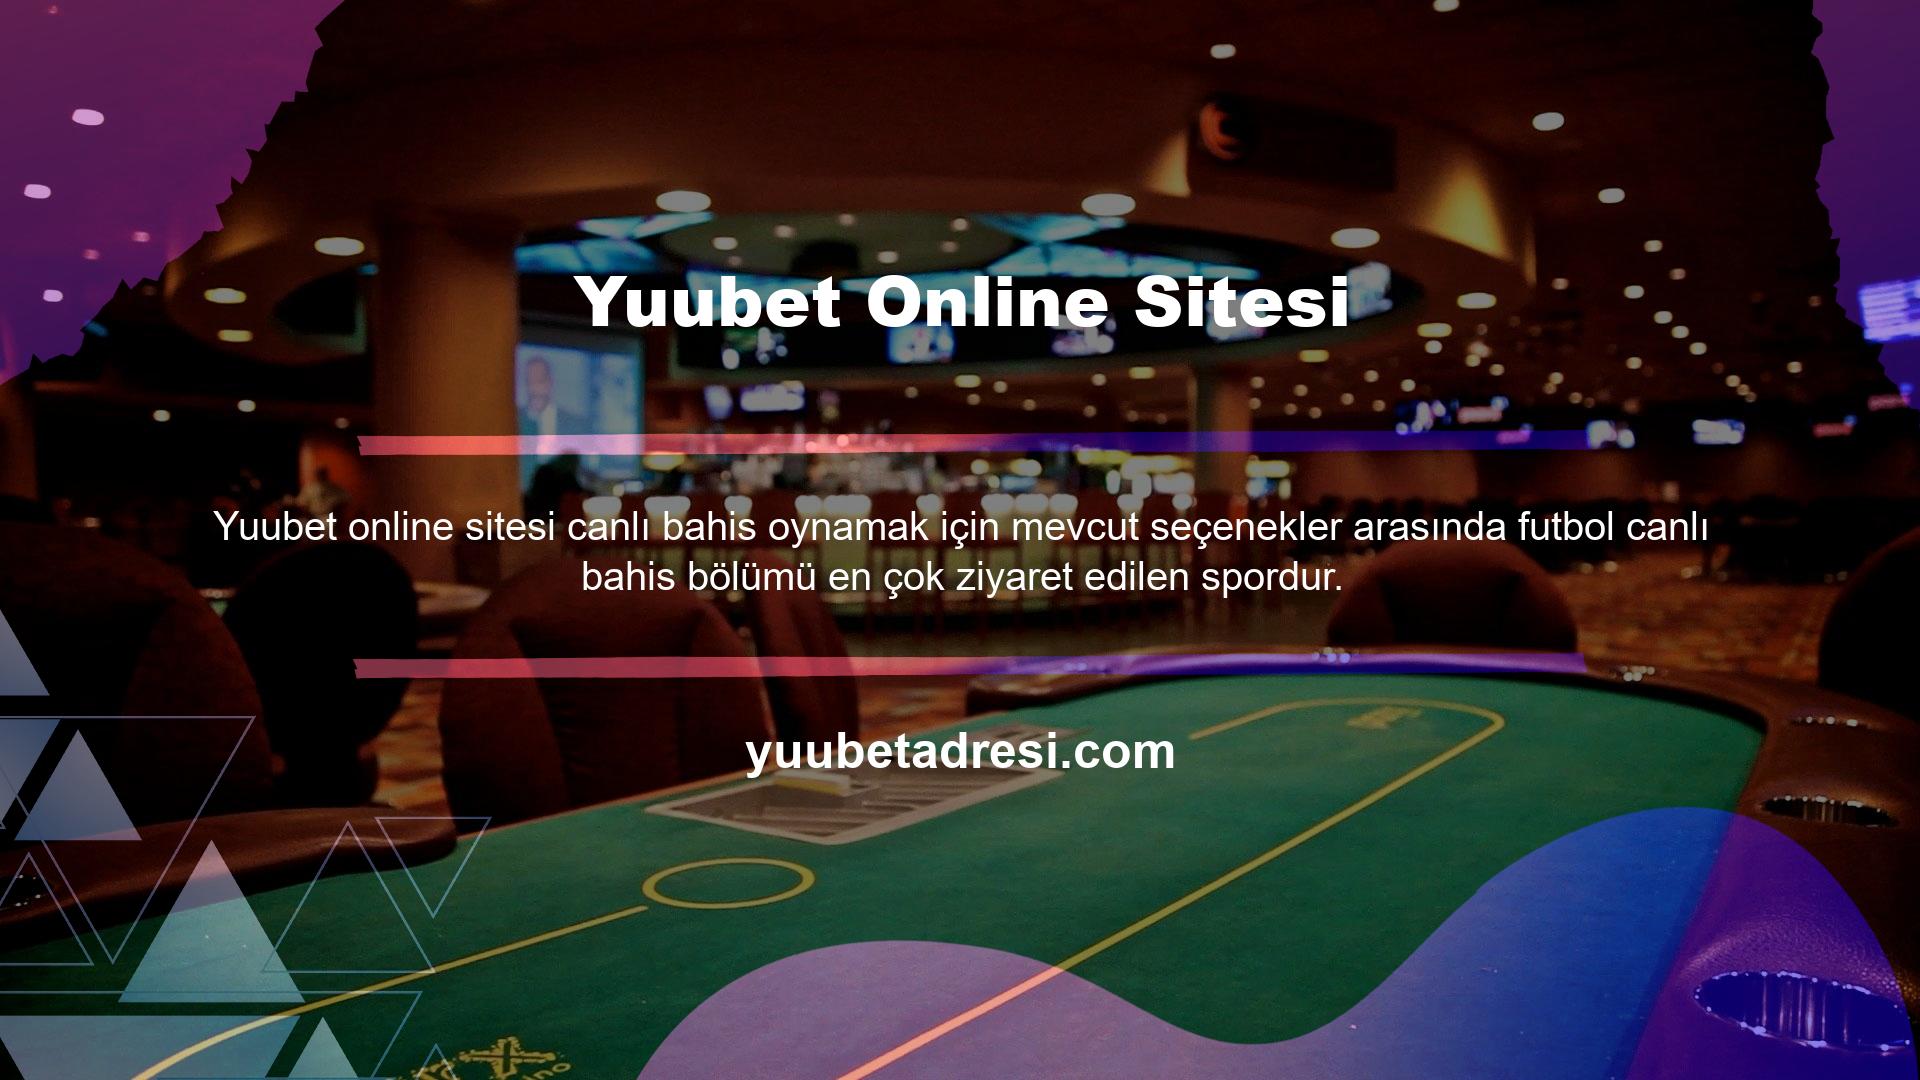 Yuubet Çevrimiçi Sitesi Yuubet web sitesi, bahis pazarındaki en güvenilir uluslararası web sitelerinden biridir